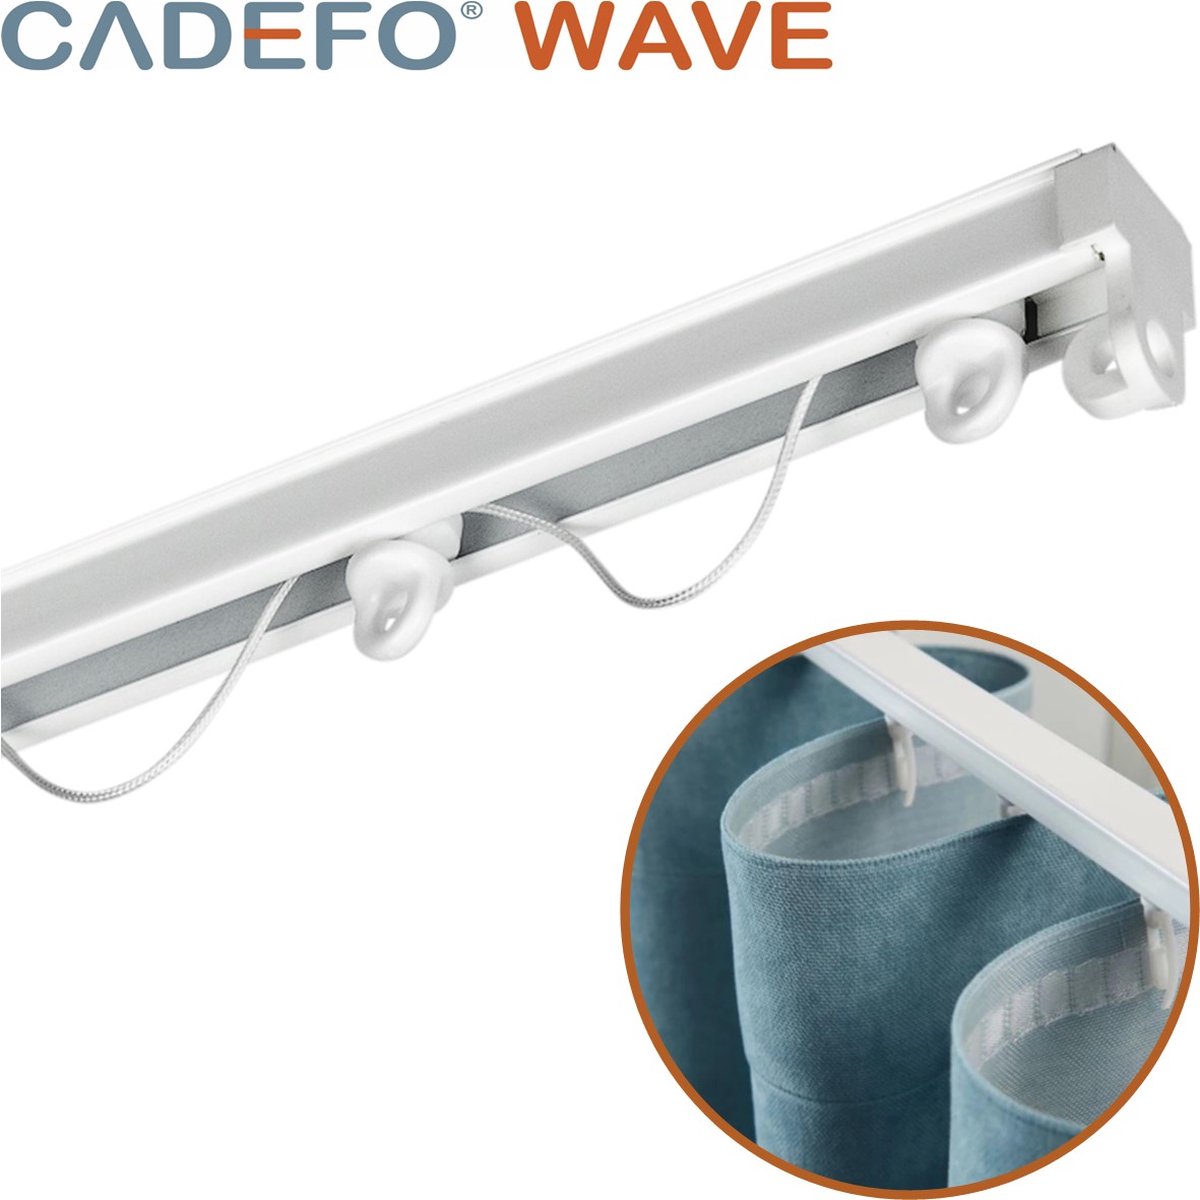 CADEFO WAVE (451 - 500 cm) Gordijnrails - Compleet op maat! - UIT 1 STUK - Leverbaar tot 6 meter - Plafondbevestiging - Lengte 488 cm